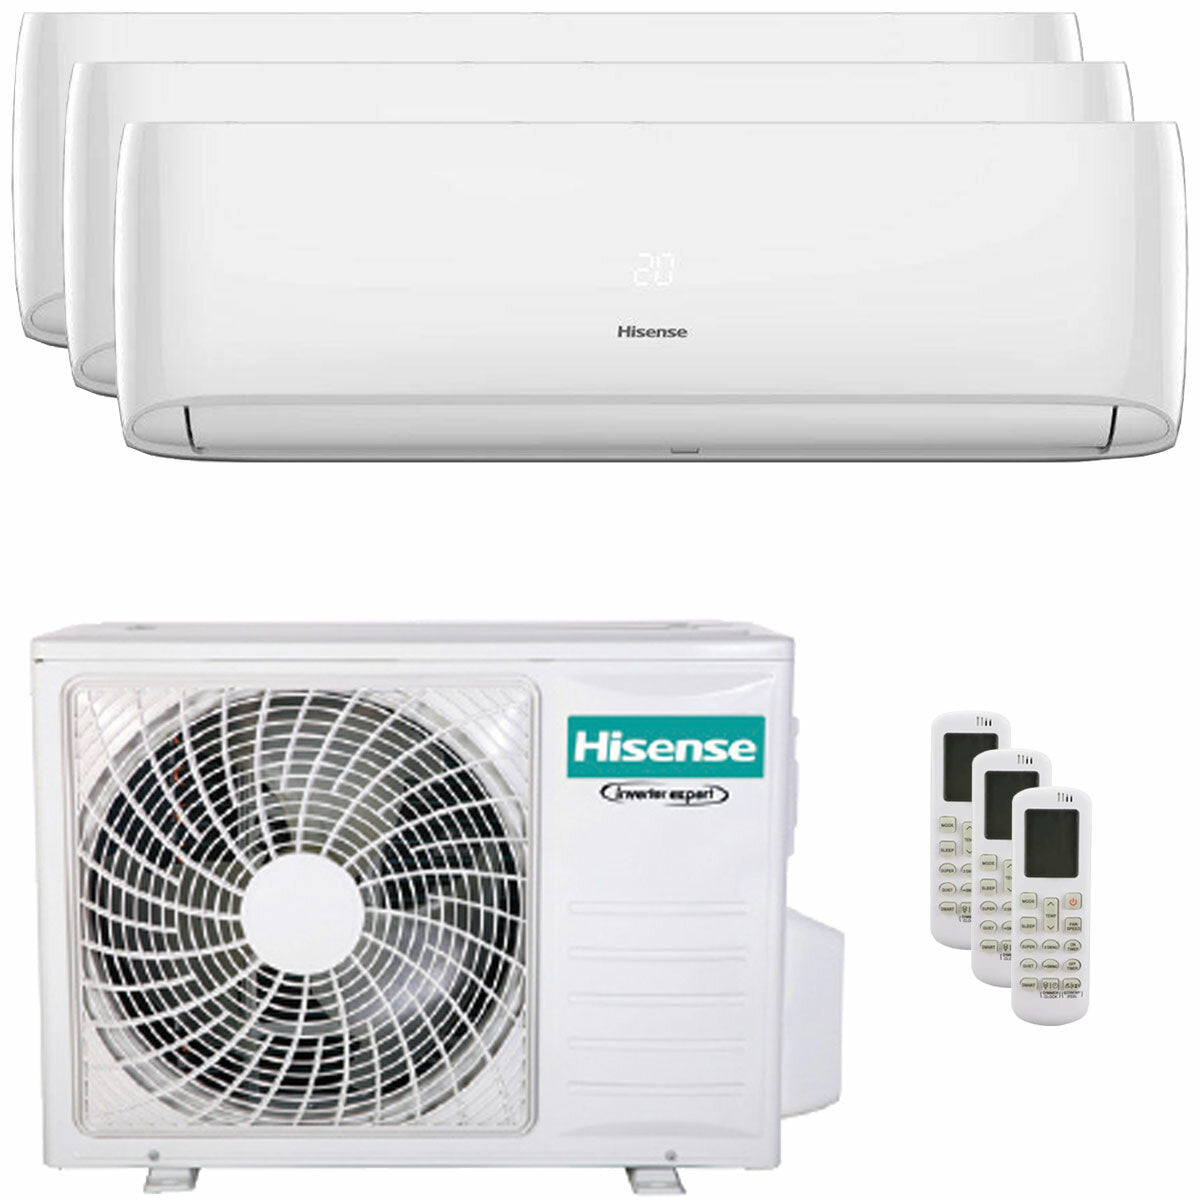 Hisense Hi-Comfort trial climatiseur split 7000+9000+9000 BTU onduleur A++ wifi unité extérieure 5,5 kW